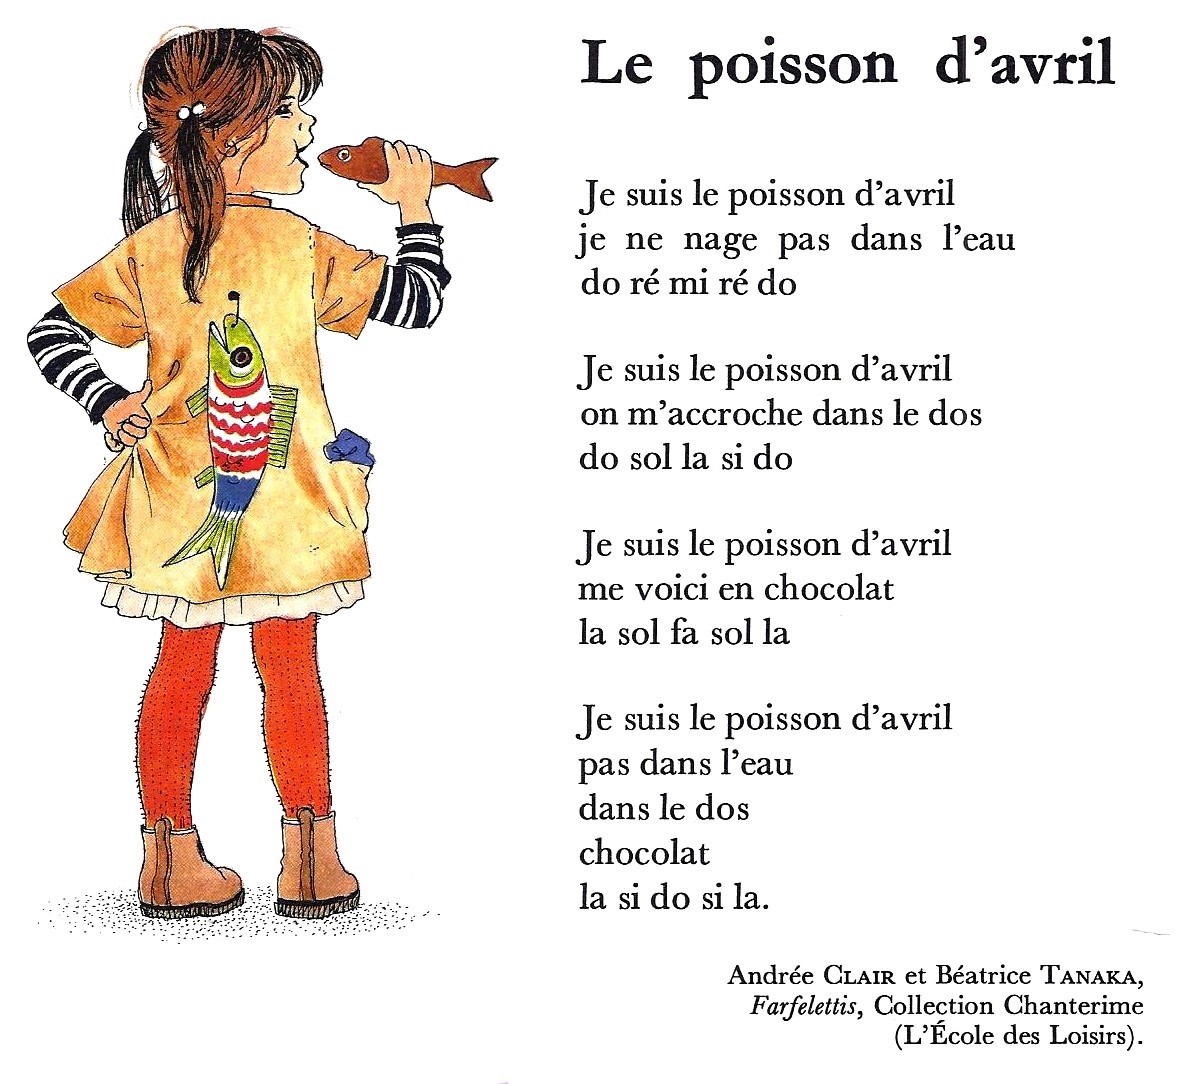 Стихотворение француза